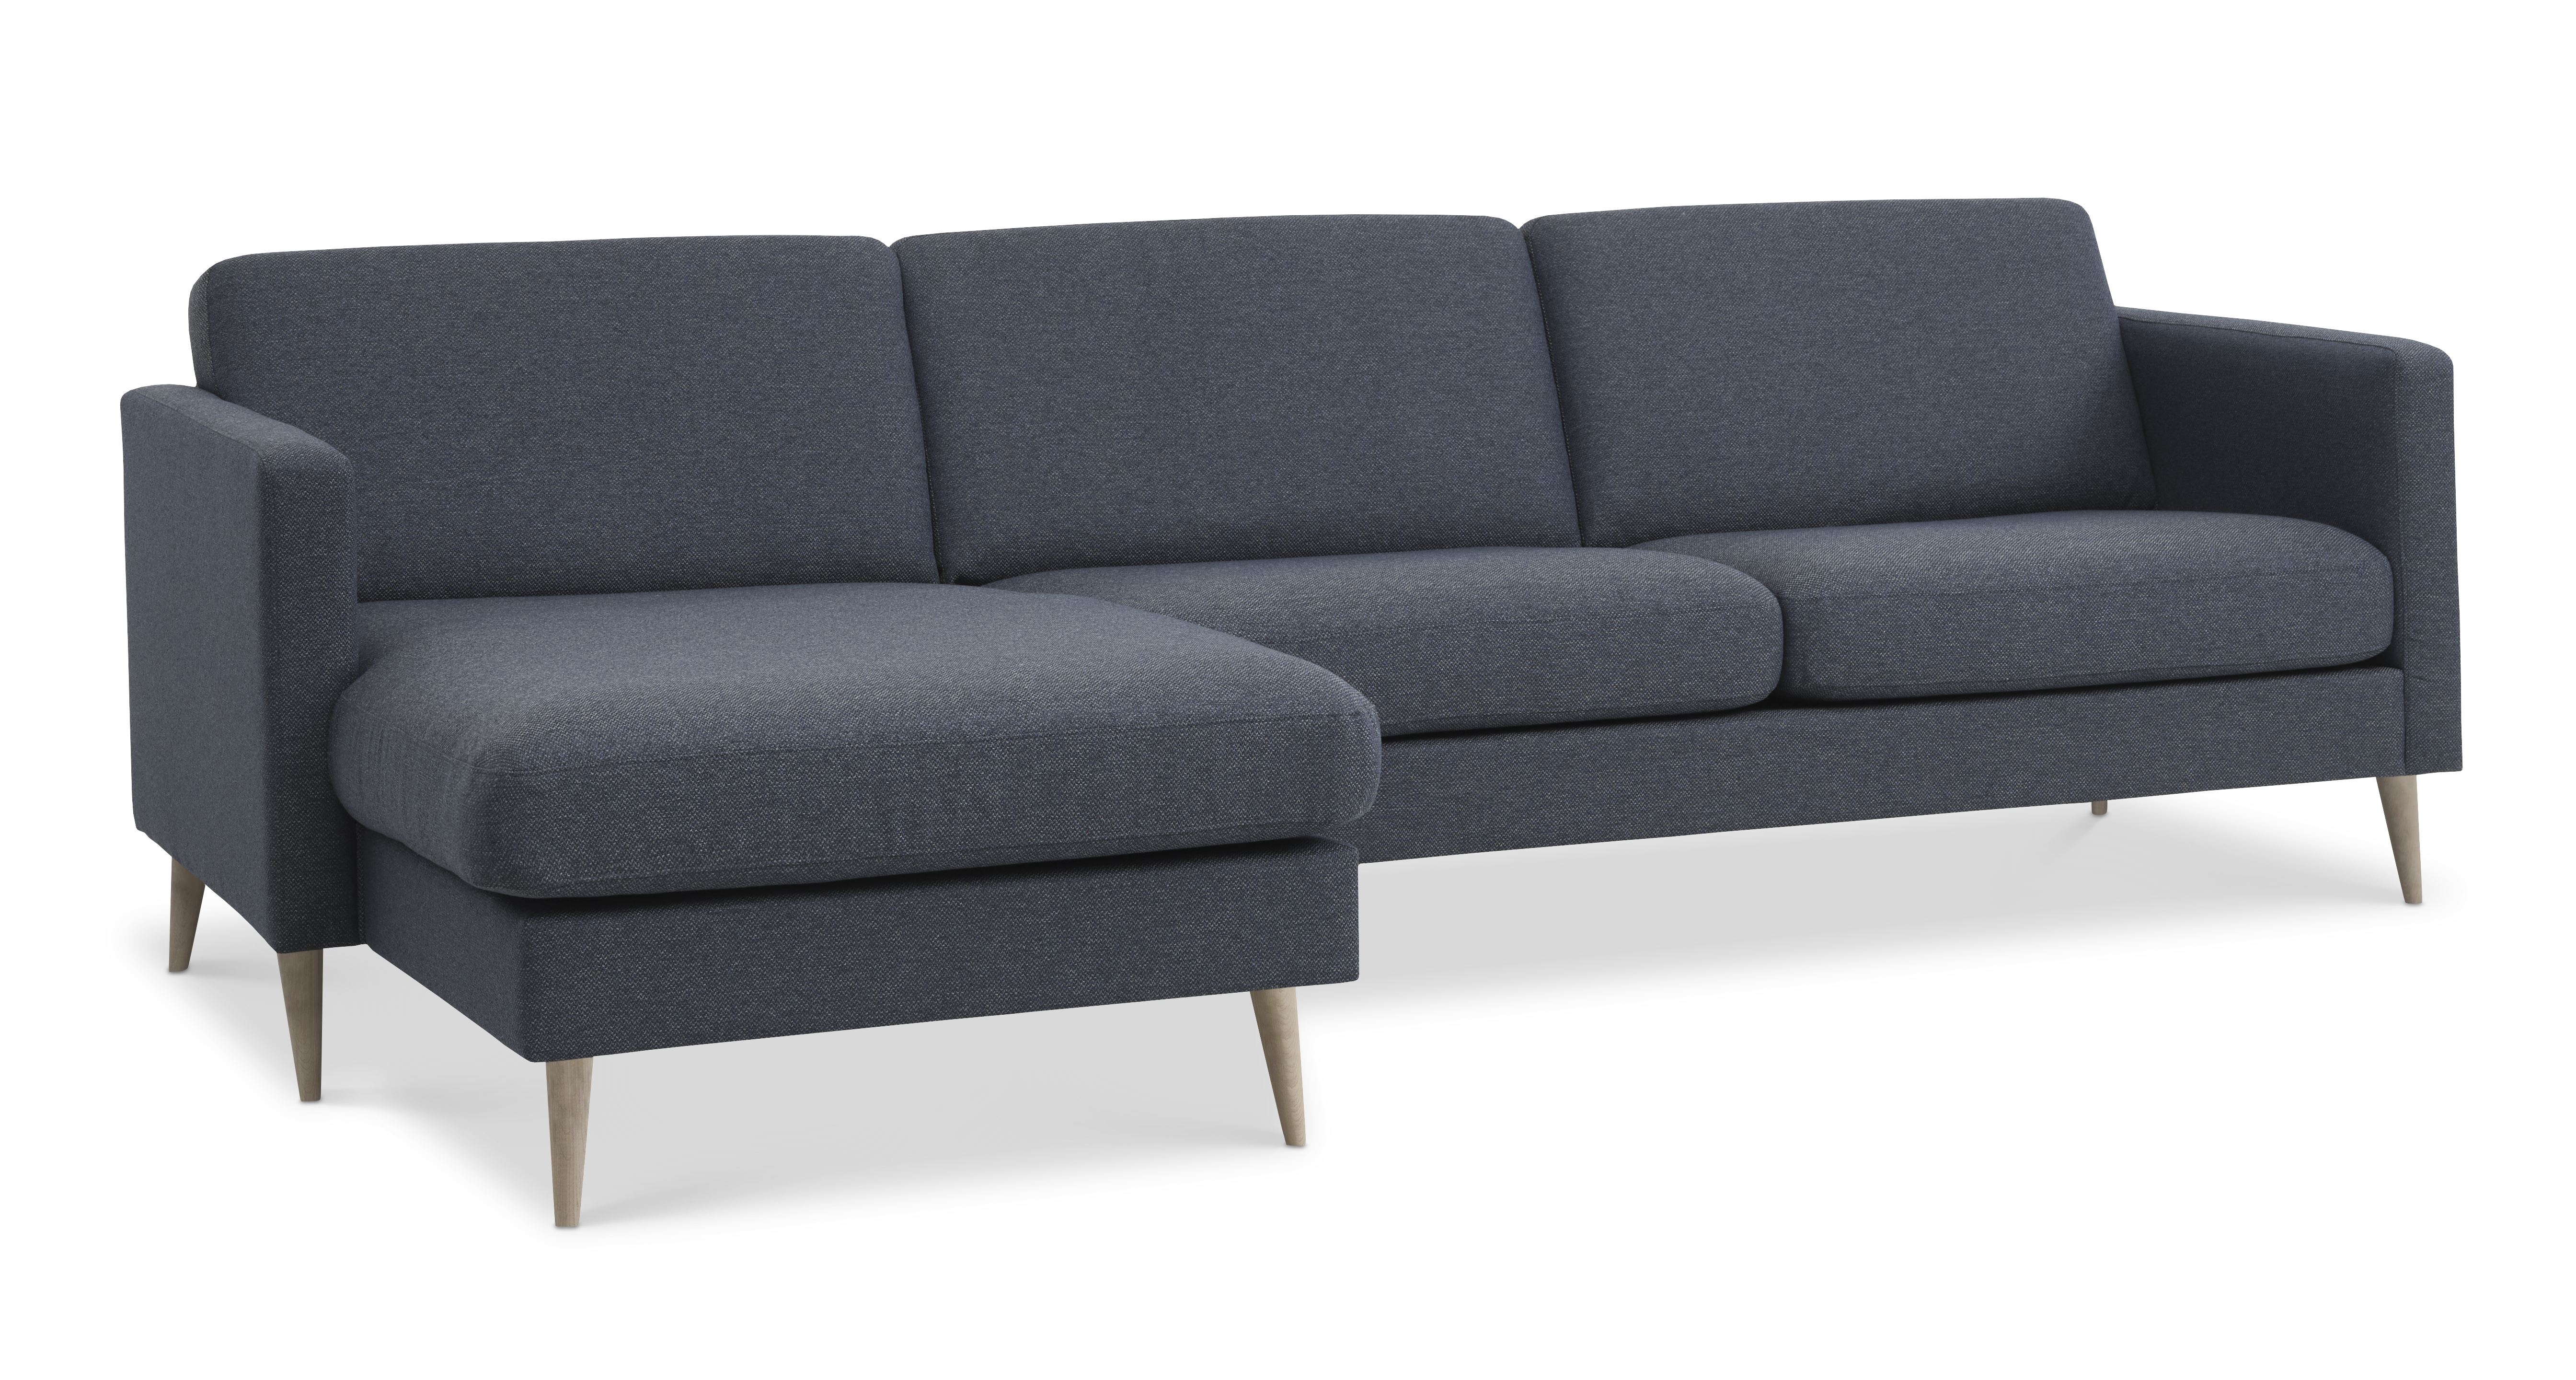 Ask sæt 51 3D sofa, m. chaiselong - navy blå polyester stof og natur træ